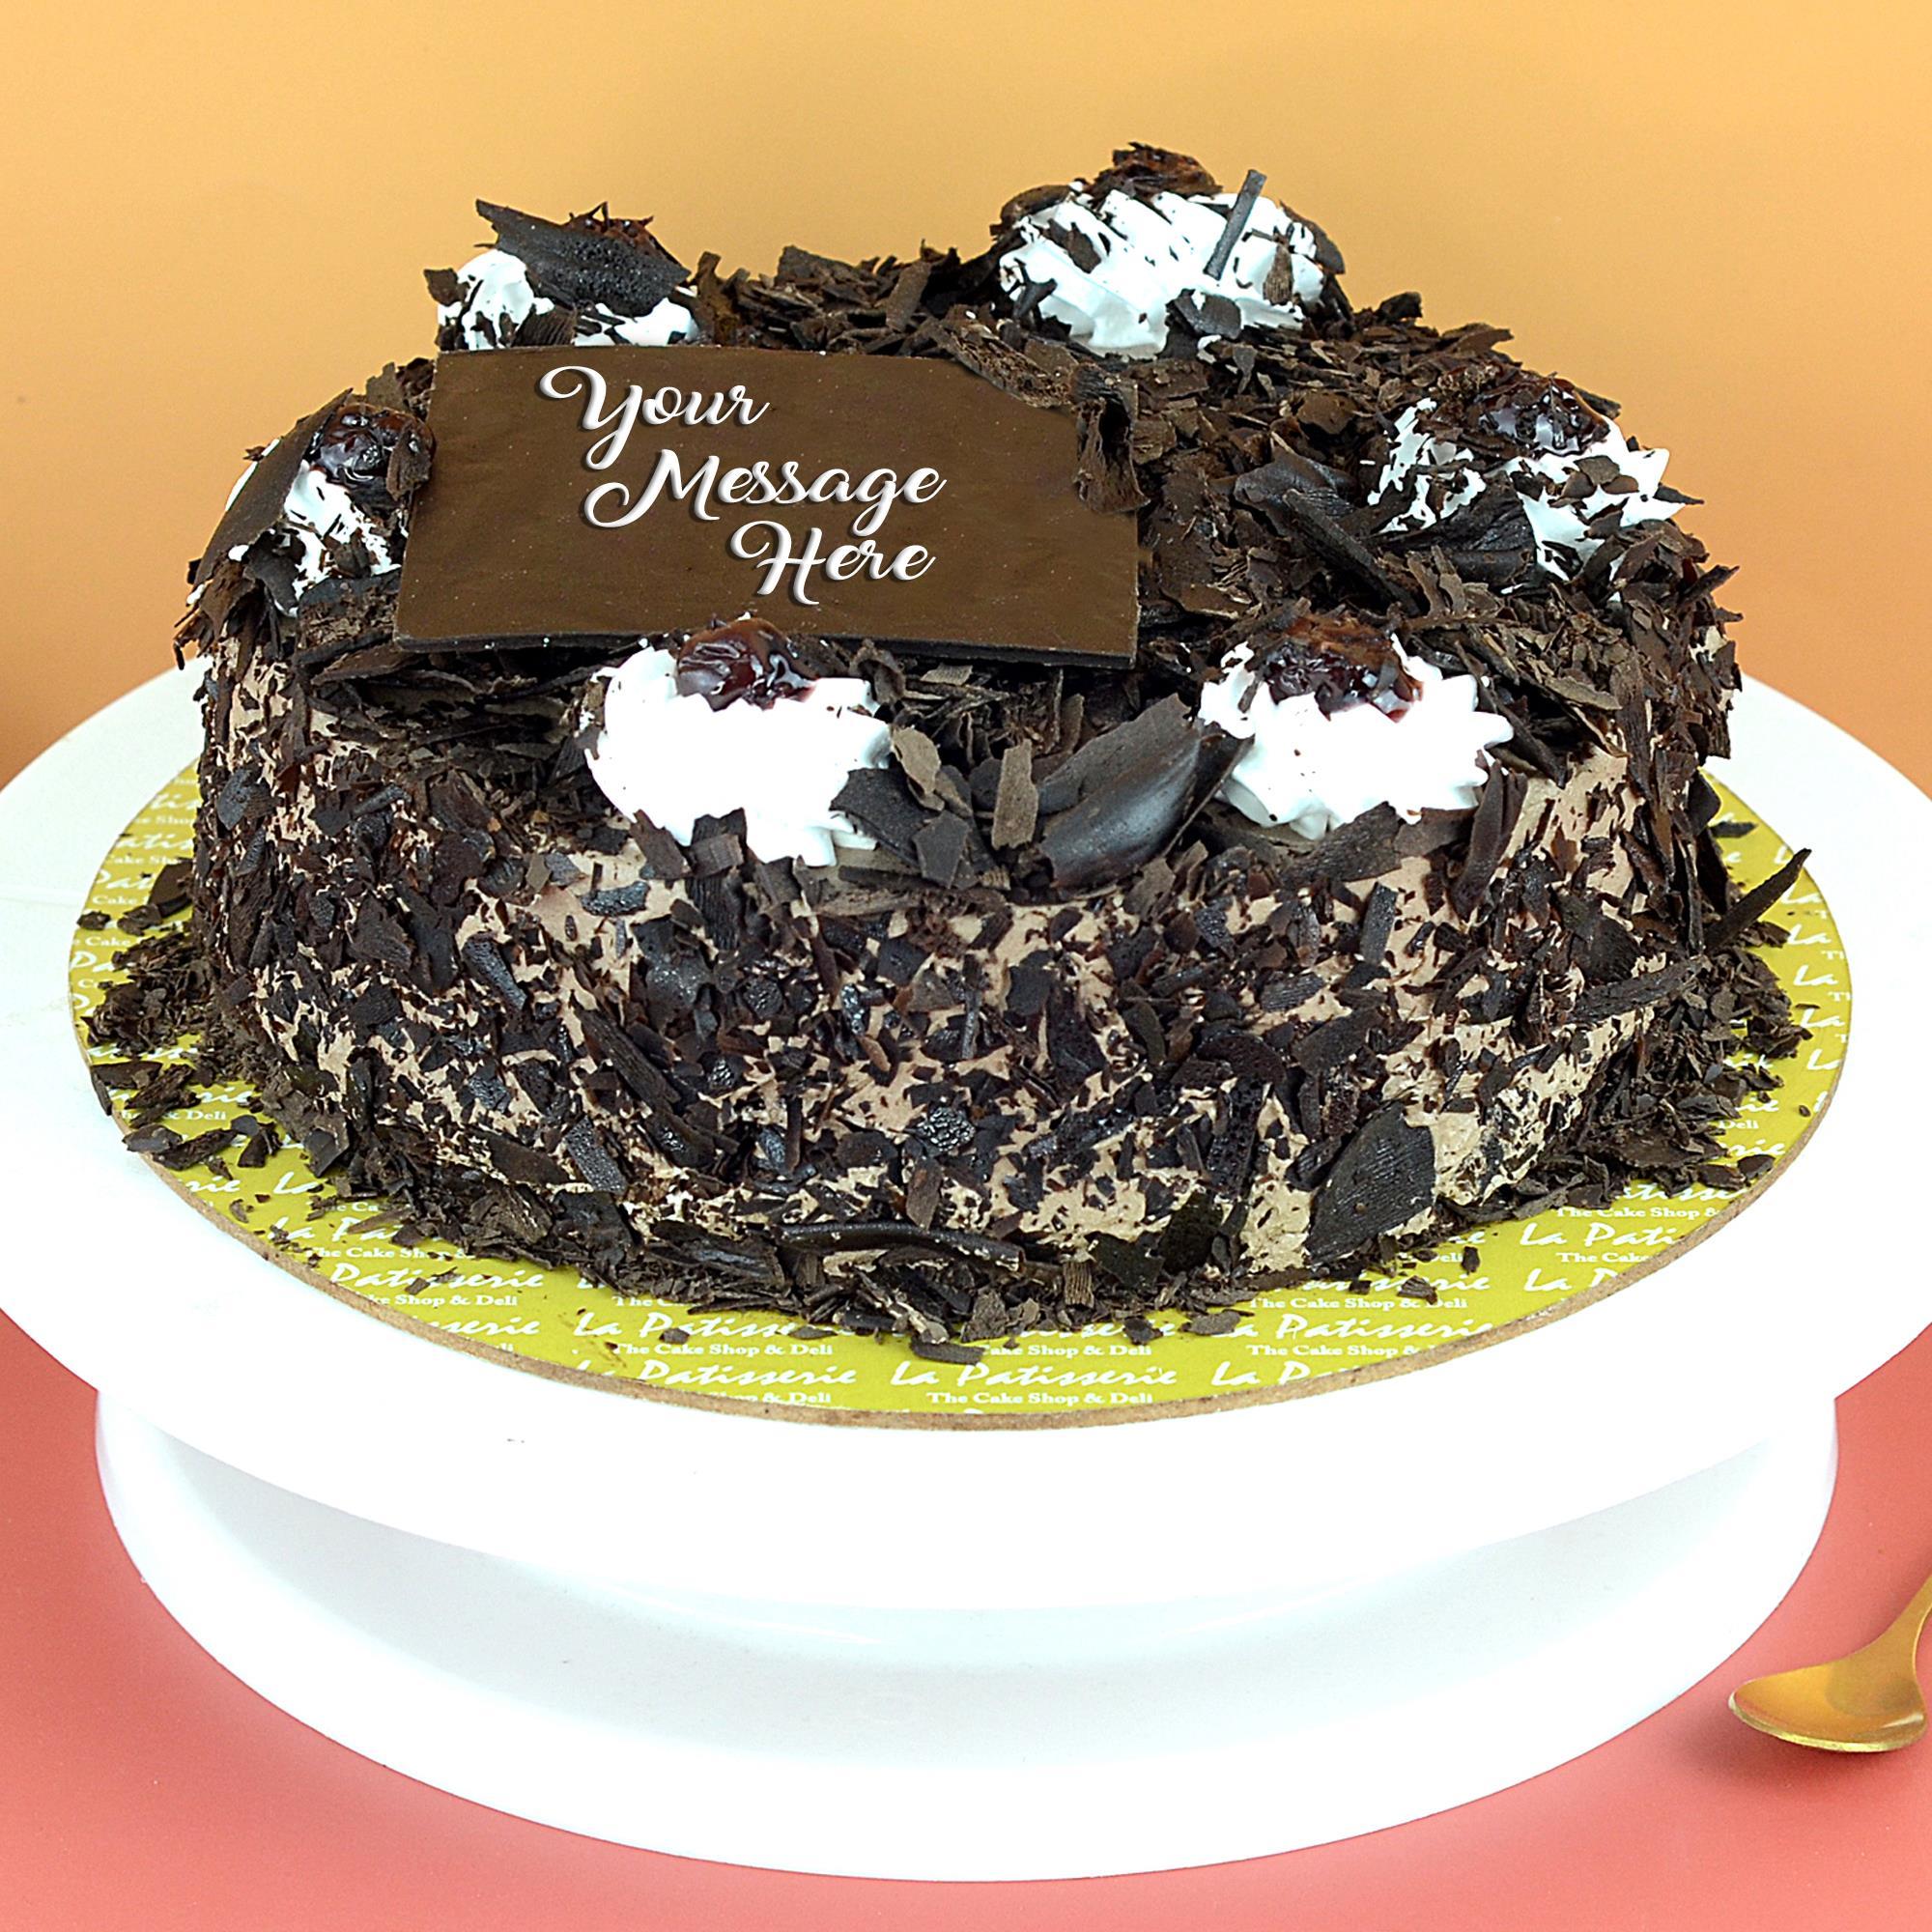 JJ's Cake For You in Manicktala,Kolkata - Best Cake Delivery Services in  Kolkata - Justdial